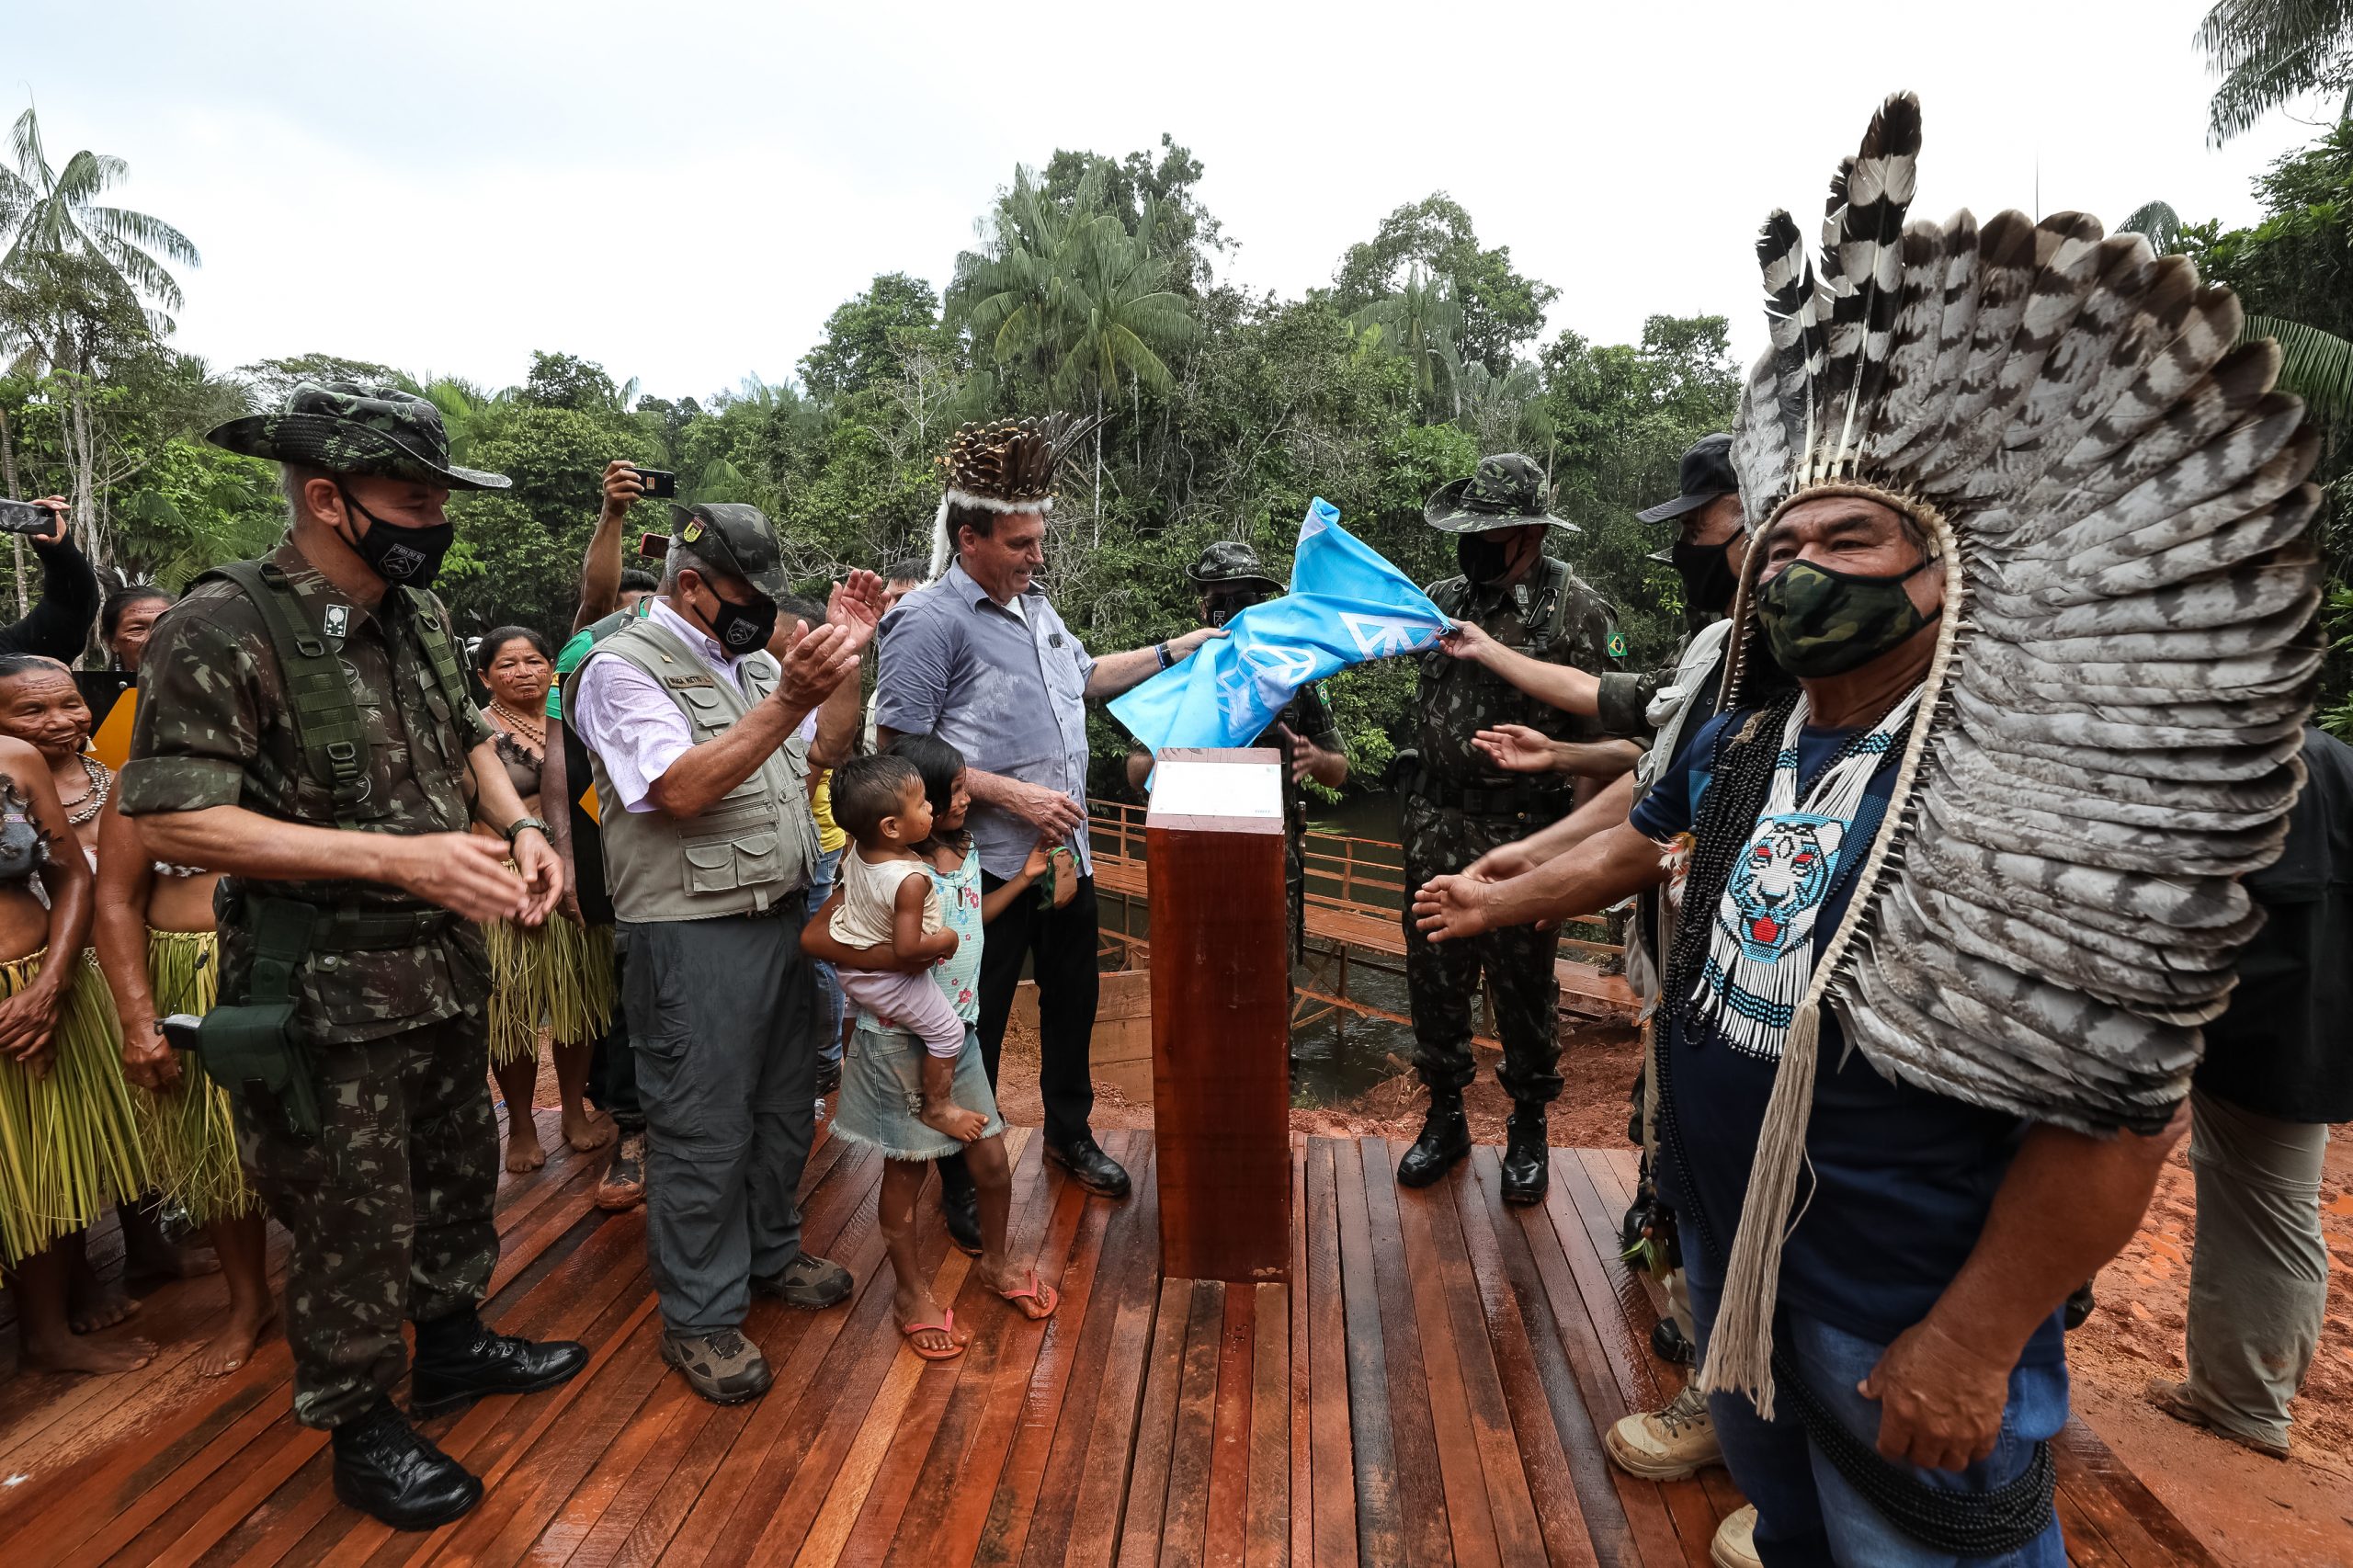 Sob clima de festa, indígenas recebem Bolsonaro com euforia e muitas fotos 17